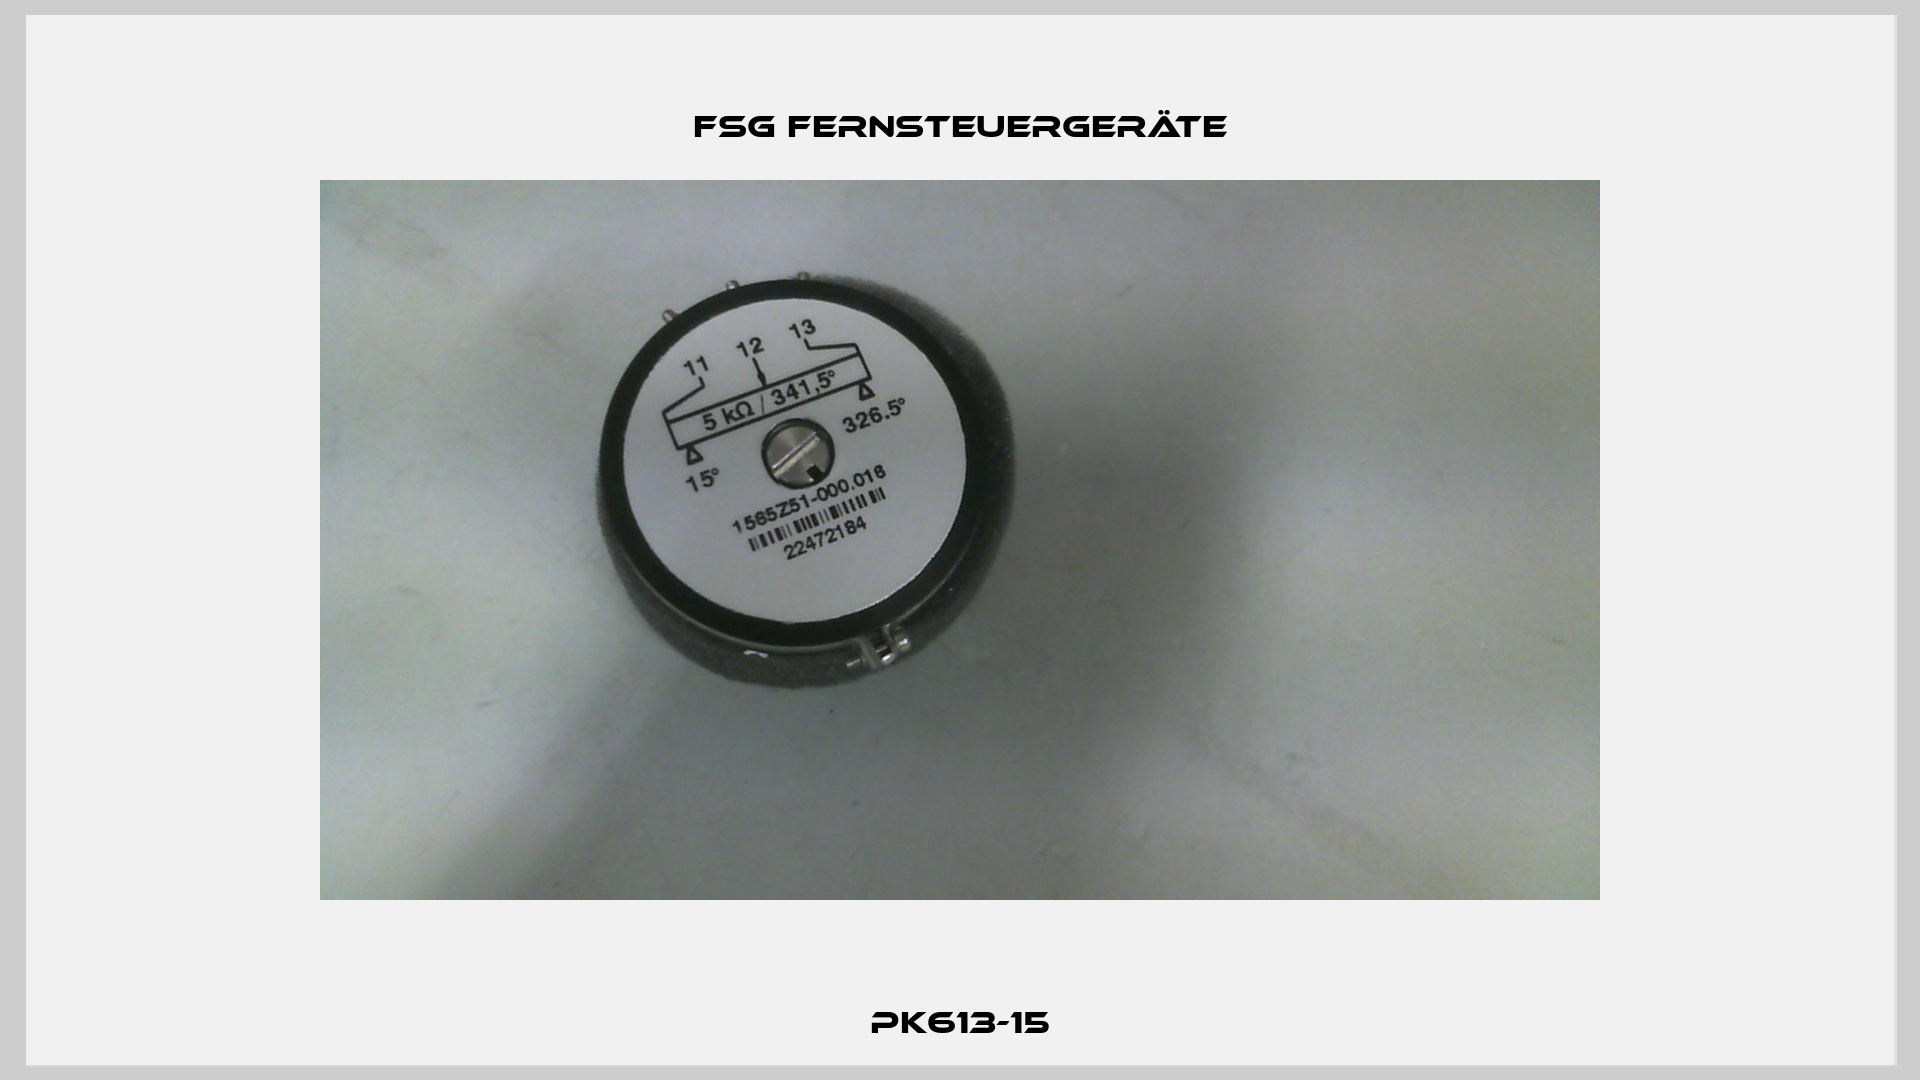 Pk613-15 FSG Fernsteuergeräte